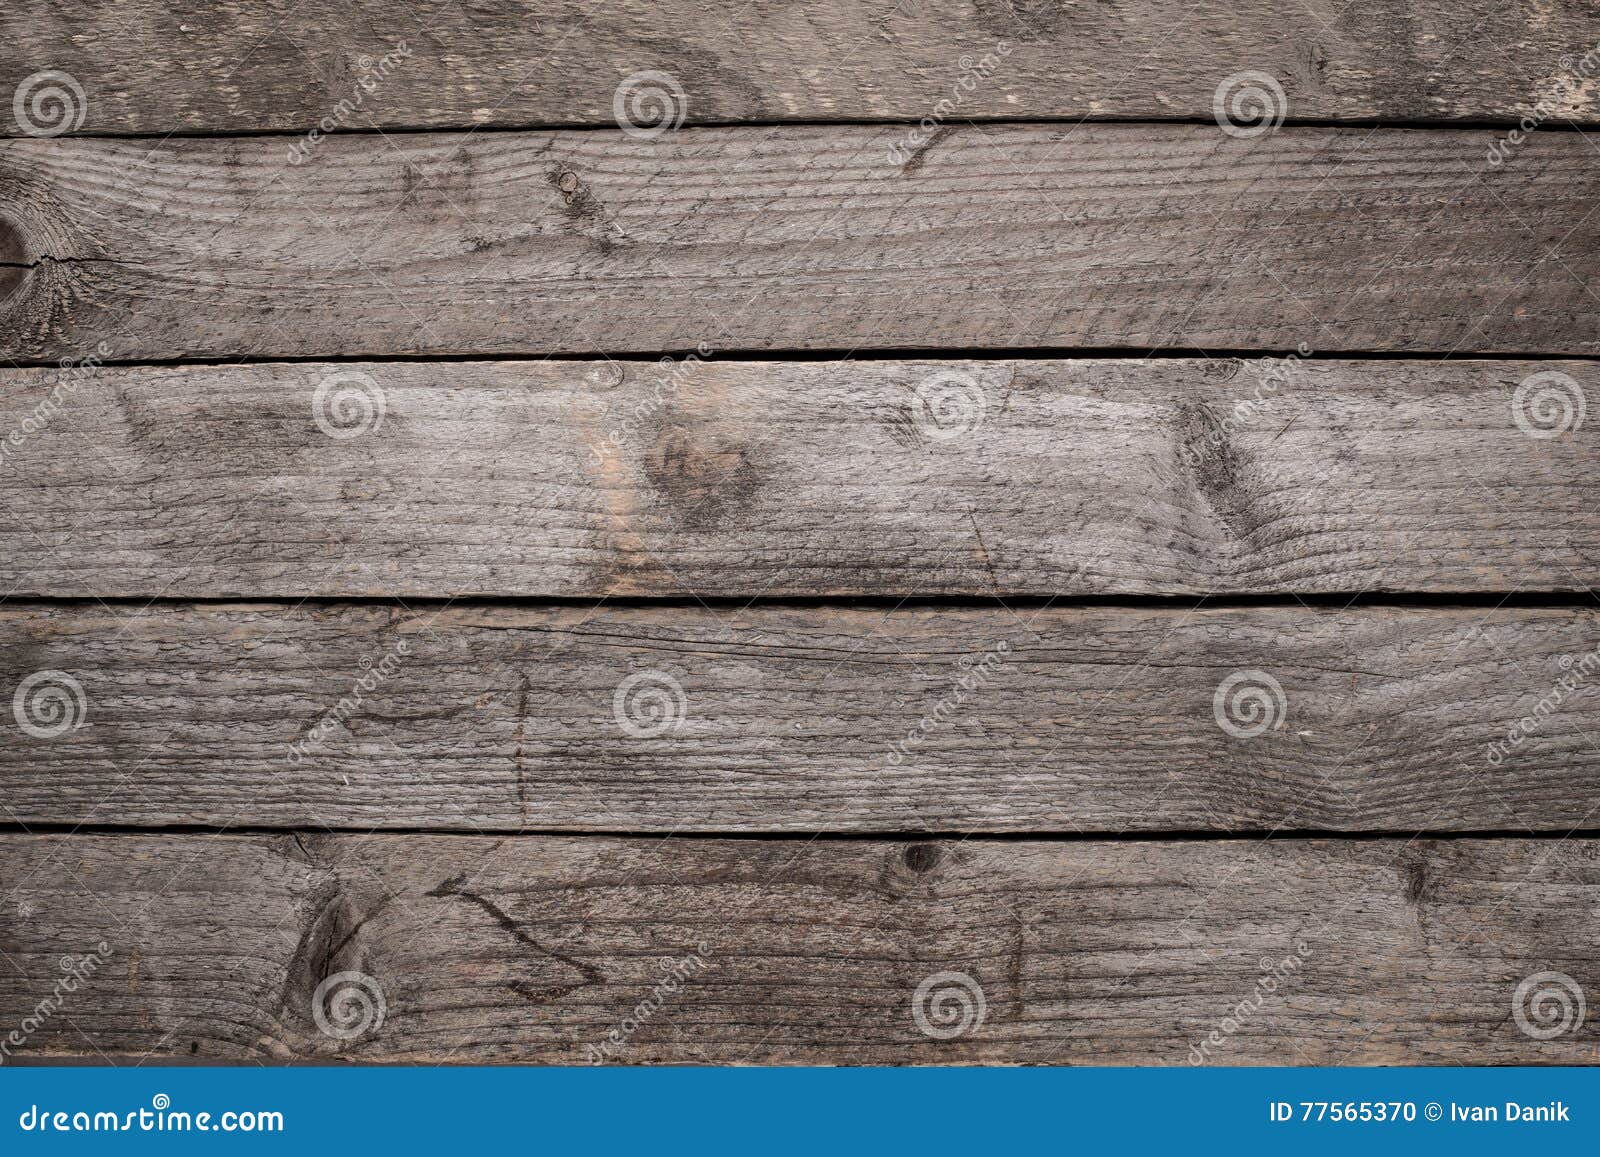 Tło tekstura stary nieociosany drewniany stół